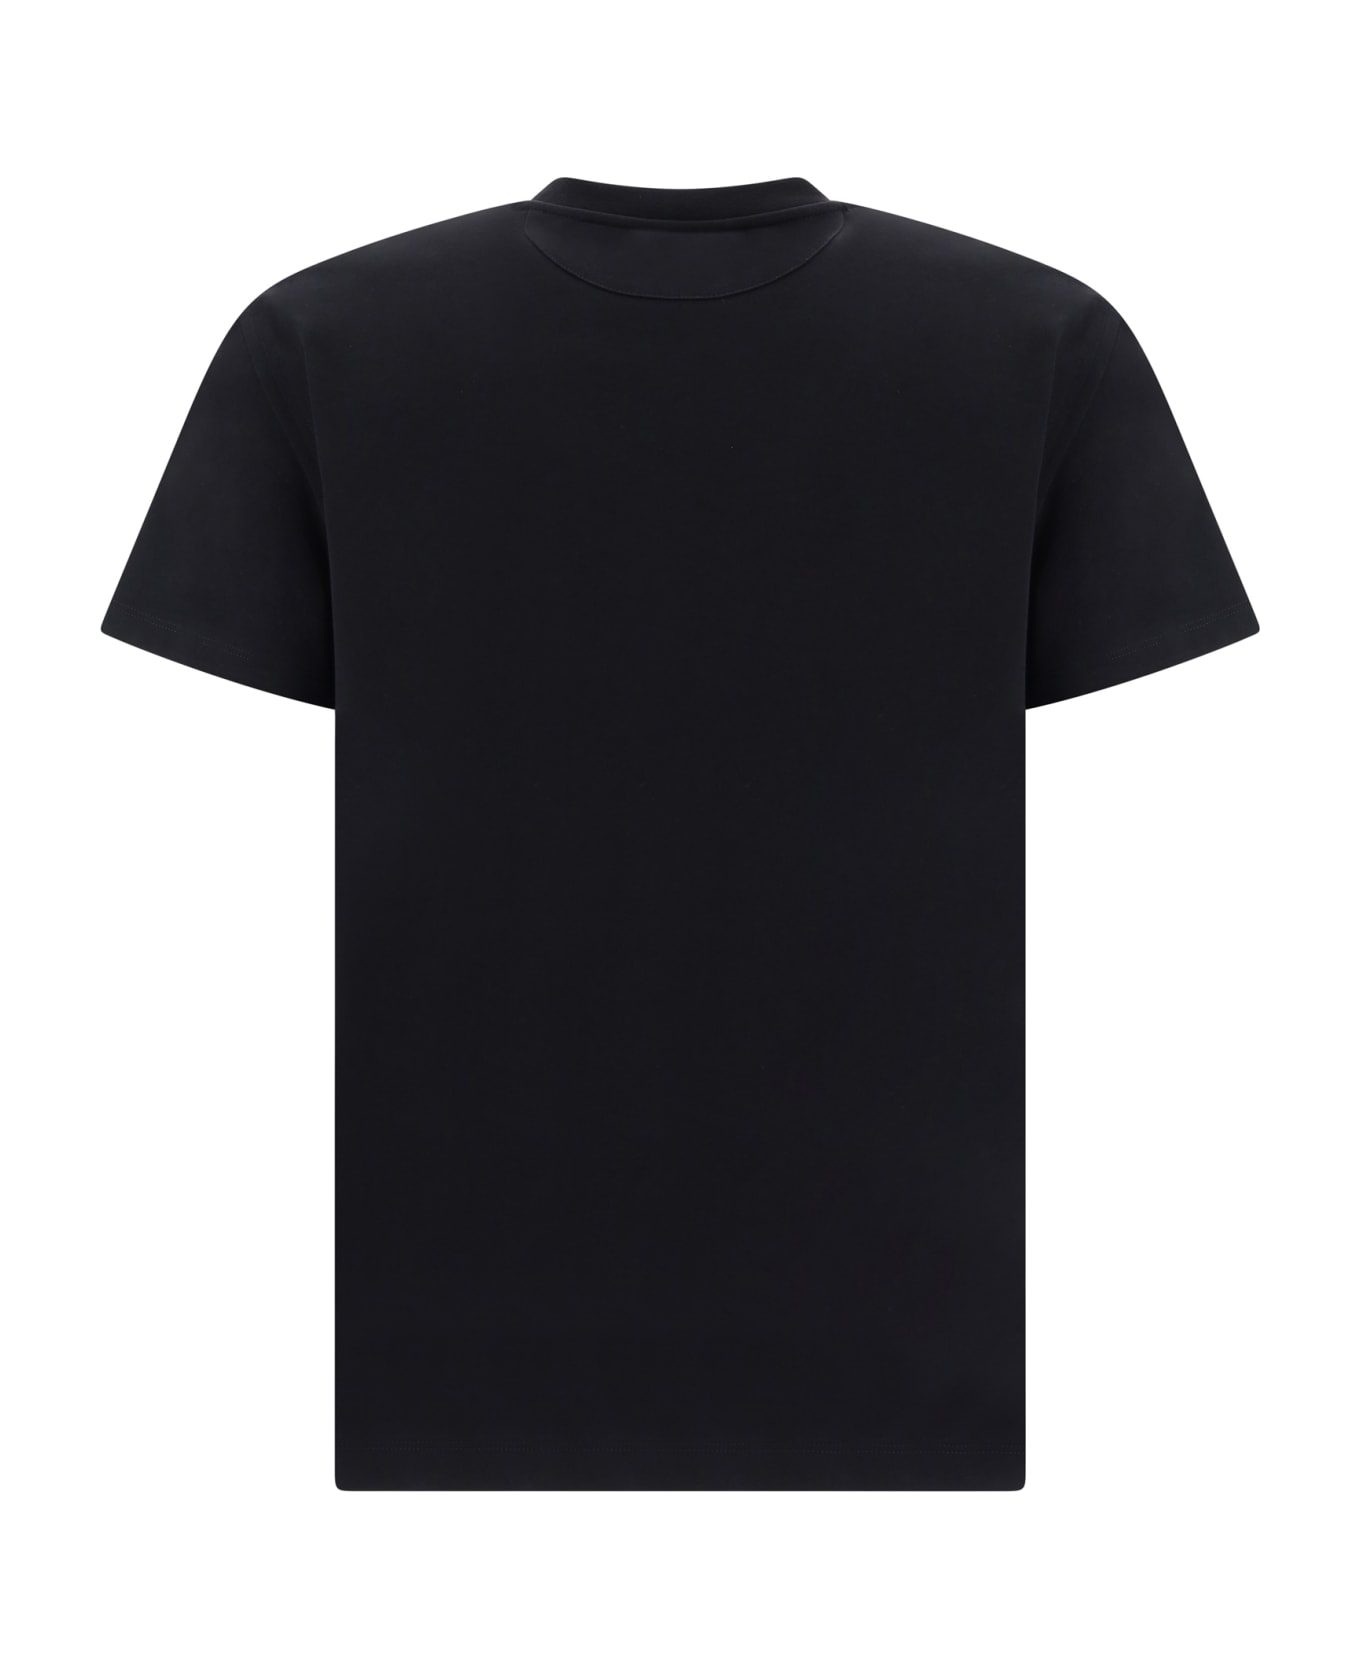 Valentino T-shirt - Nero